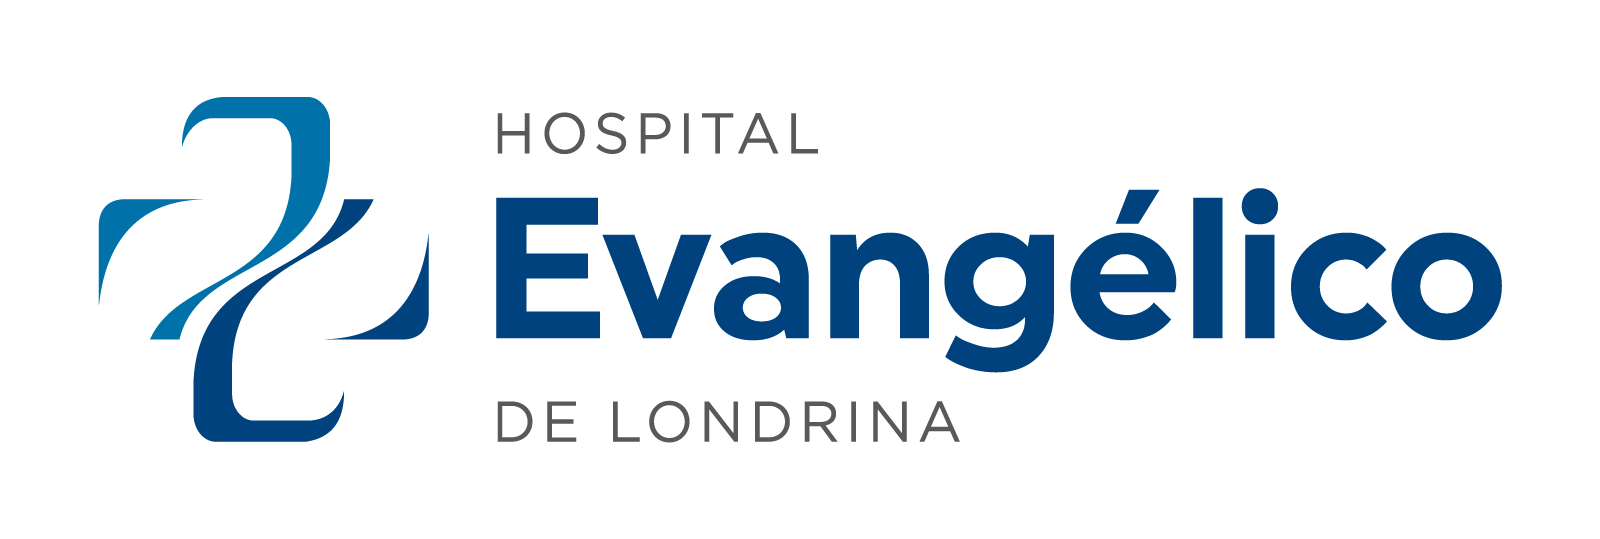 HOSPITAL EVANGÉLICO DE LONDRINA